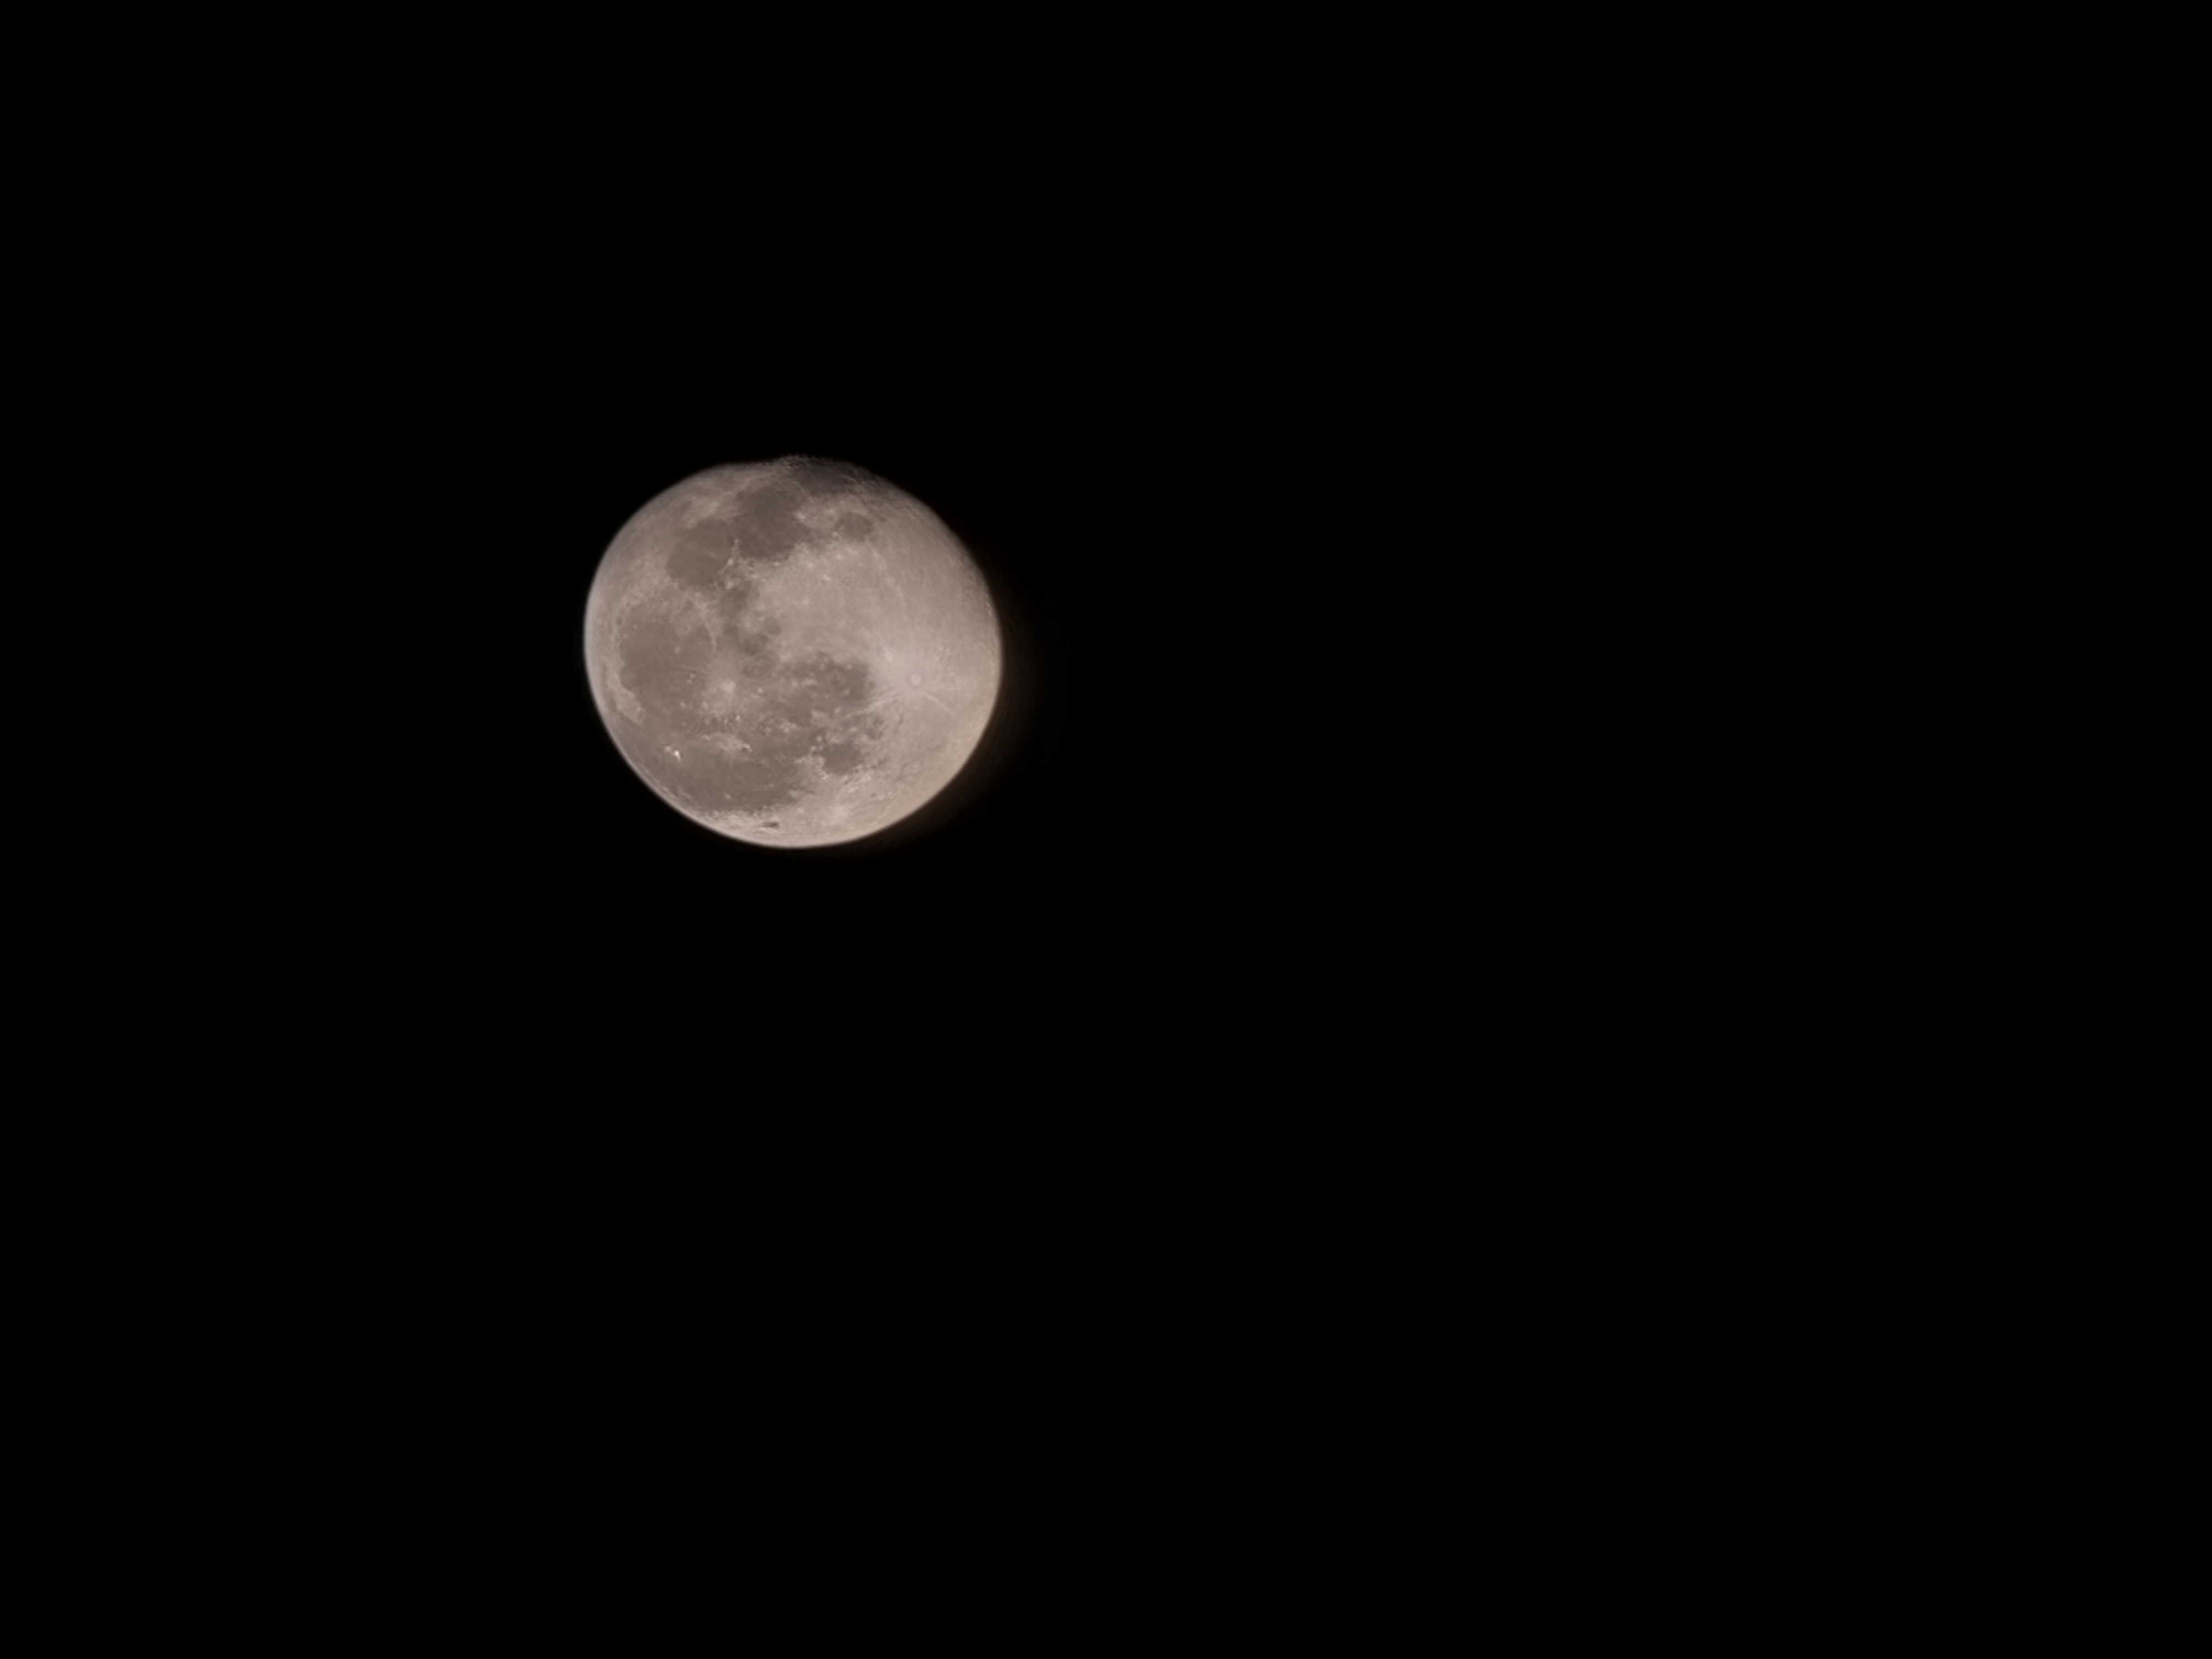 تصویر ماه با زوم ۳۰ برابری گلکسی اس ۲۱ اولترا